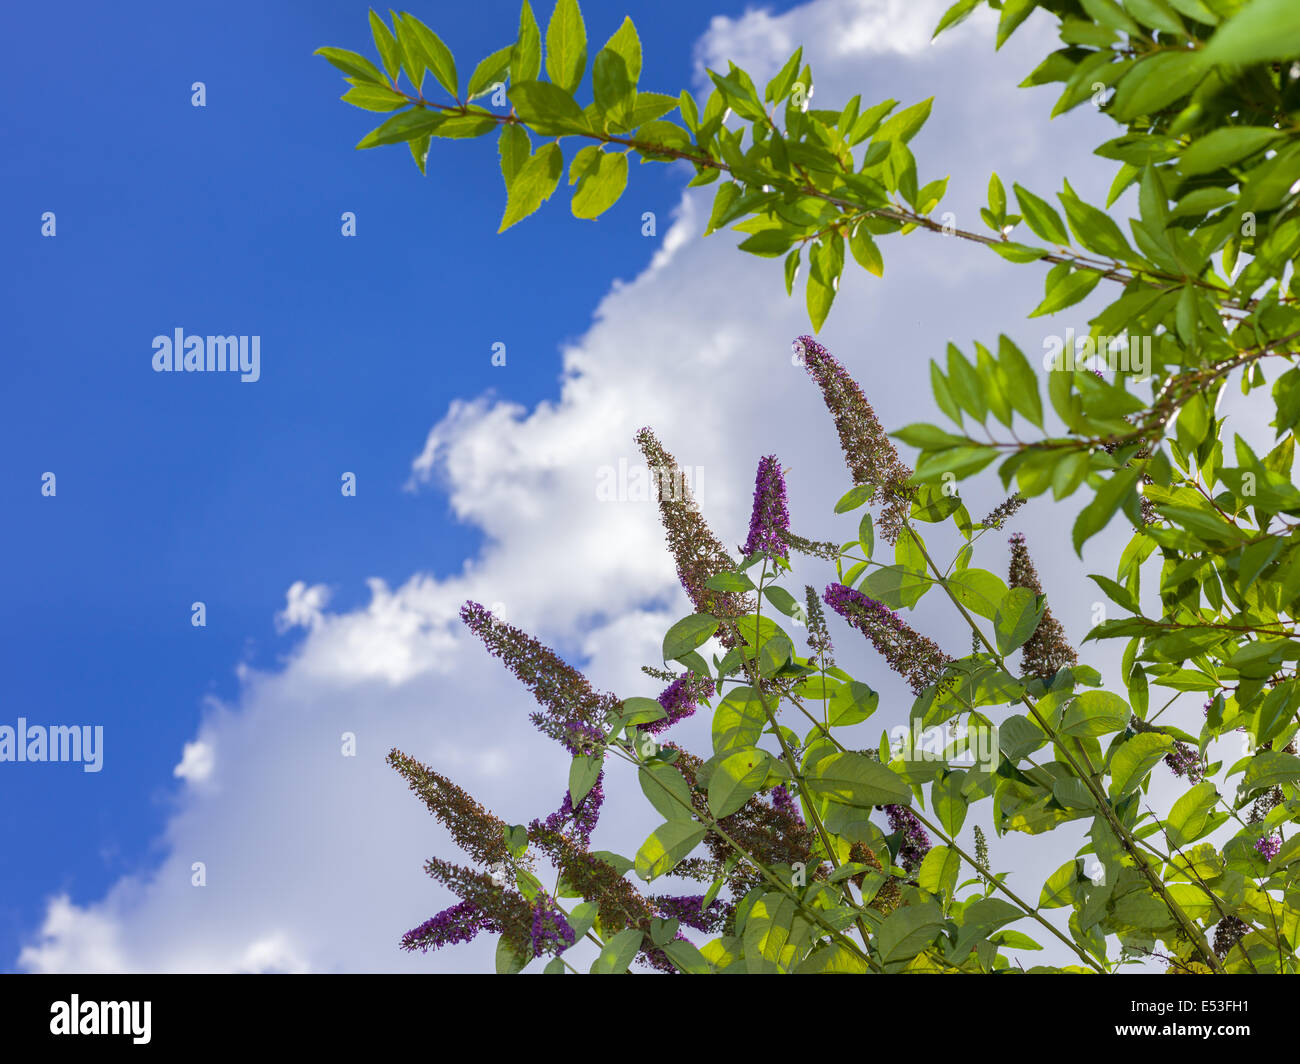 Ambiente de jardín plantas verdes, plantas de floración de flores azul cielo, sol de verano nube fresco fuera símbolo exterior ambiente jardinero bush Foto de stock